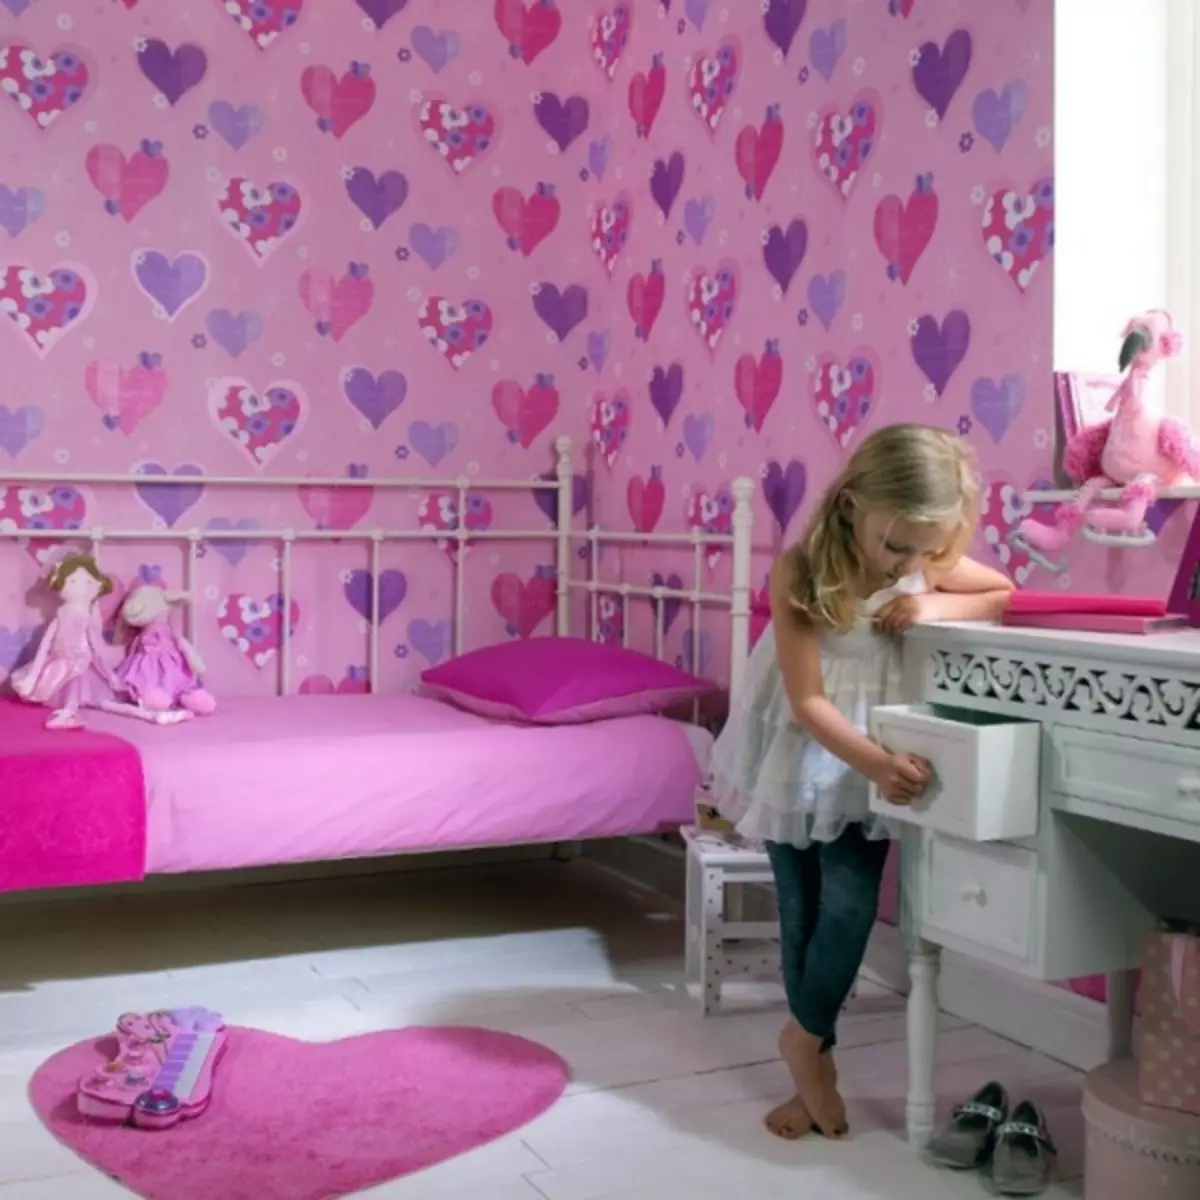 Hintergrundbild in einem Kinderzimmer - 110 Fotos von den besten Designideen. Vorbereitung und Kombinationsoptionen.